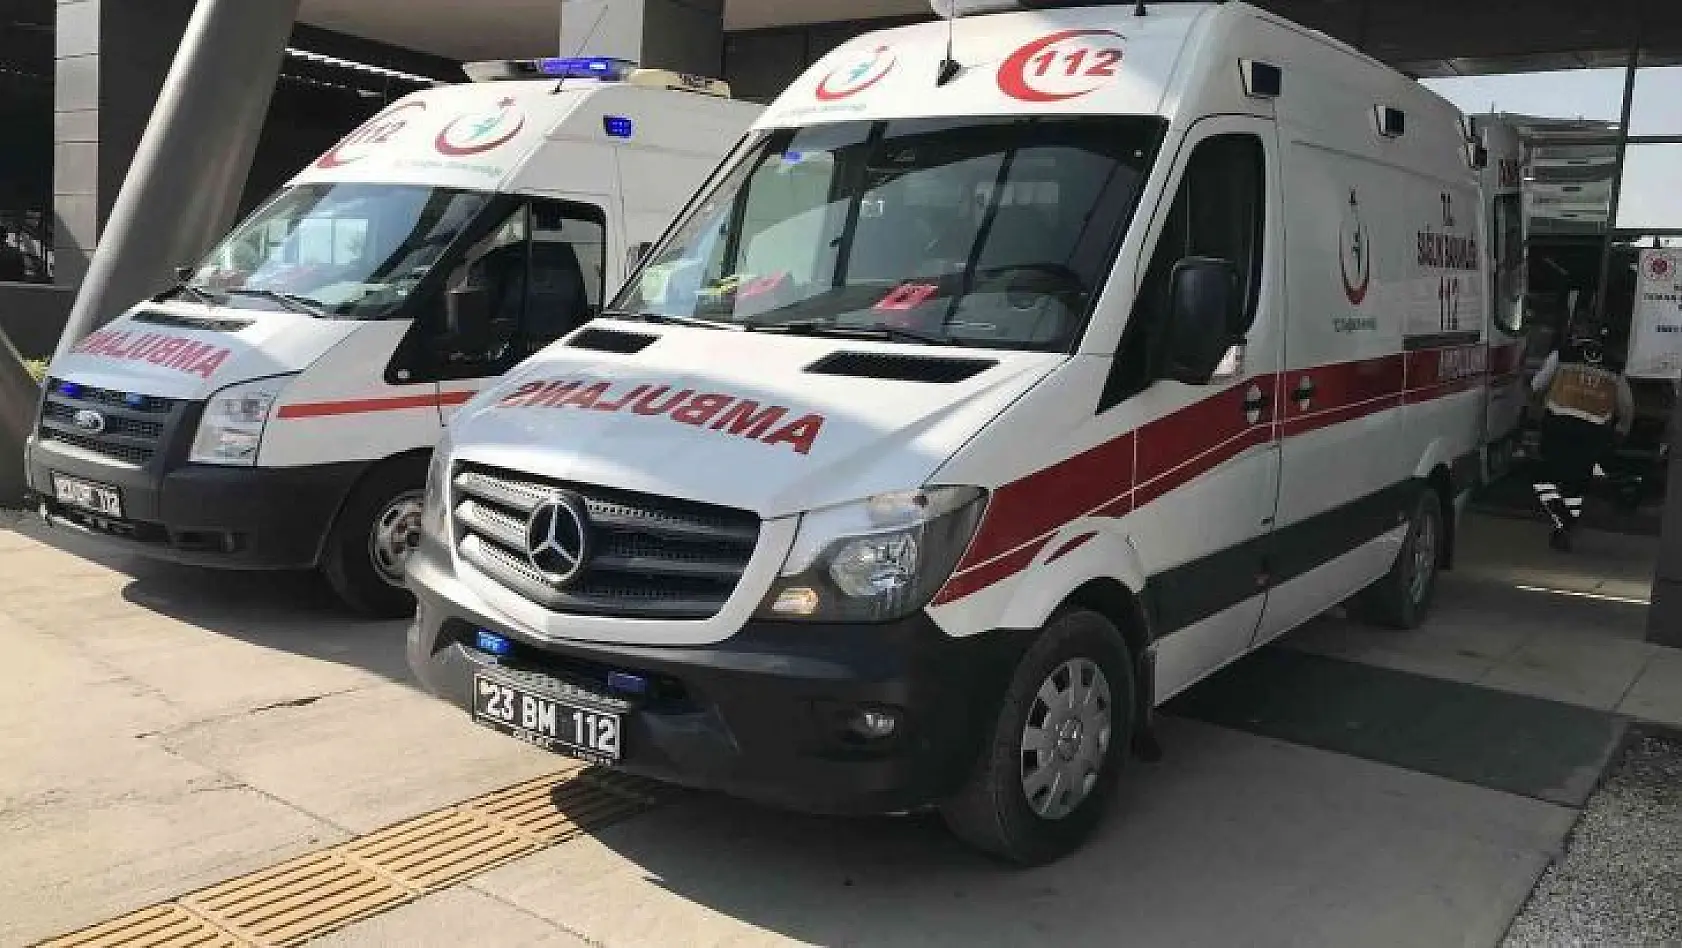 Tunceli'de otomobil şarampole yuvarlandı: 3 yaralı